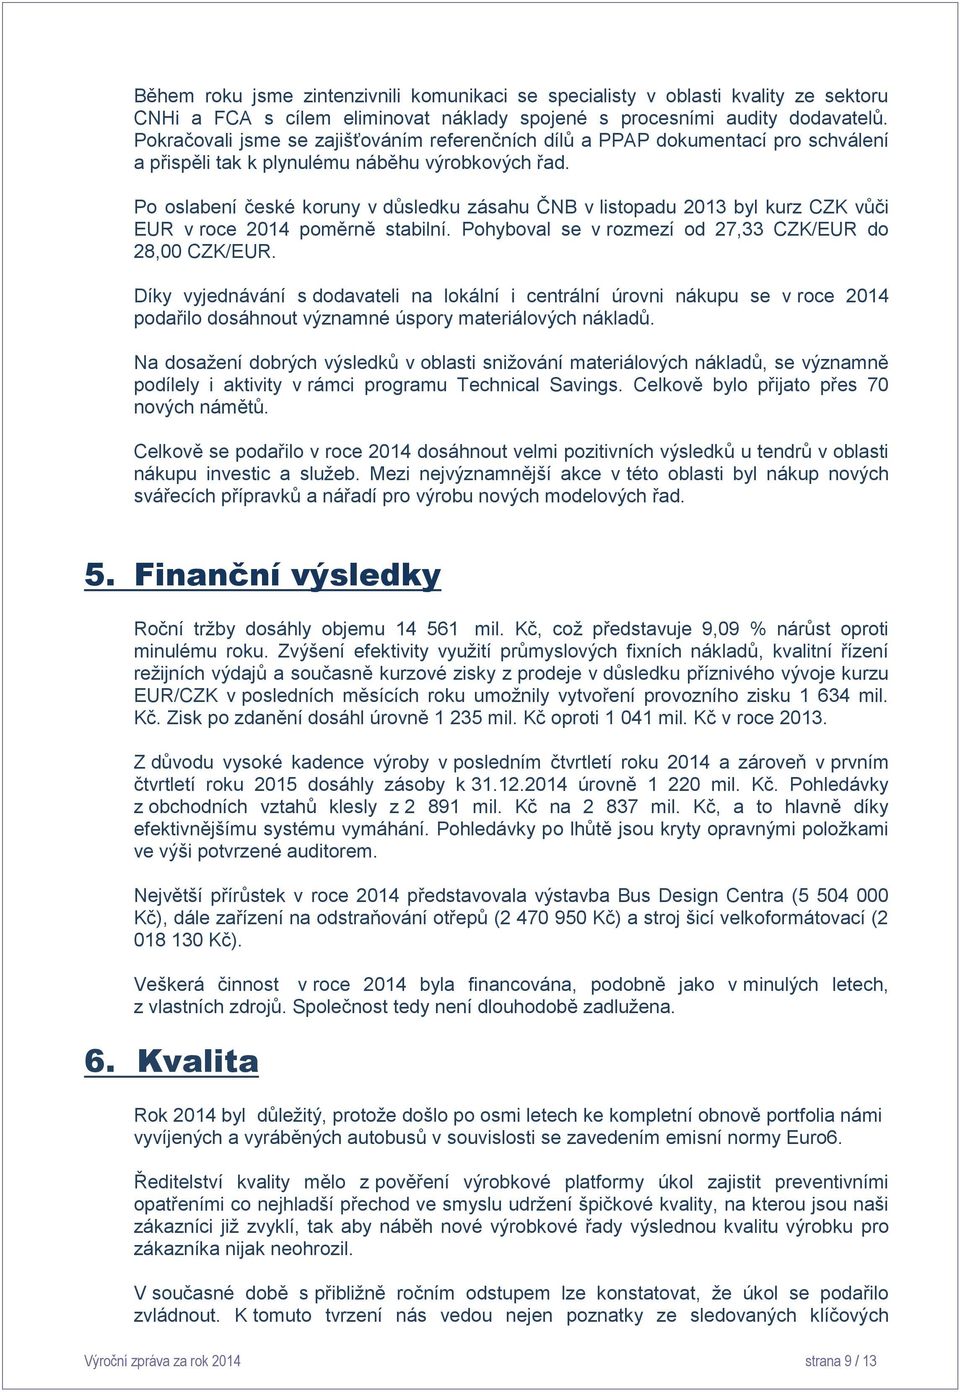 Po oslabení české koruny v důsledku zásahu ČNB v listopadu 2013 byl kurz CZK vůči EUR v roce 2014 poměrně stabilní. Pohyboval se v rozmezí od 27,33 CZK/EUR do 28,00 CZK/EUR.